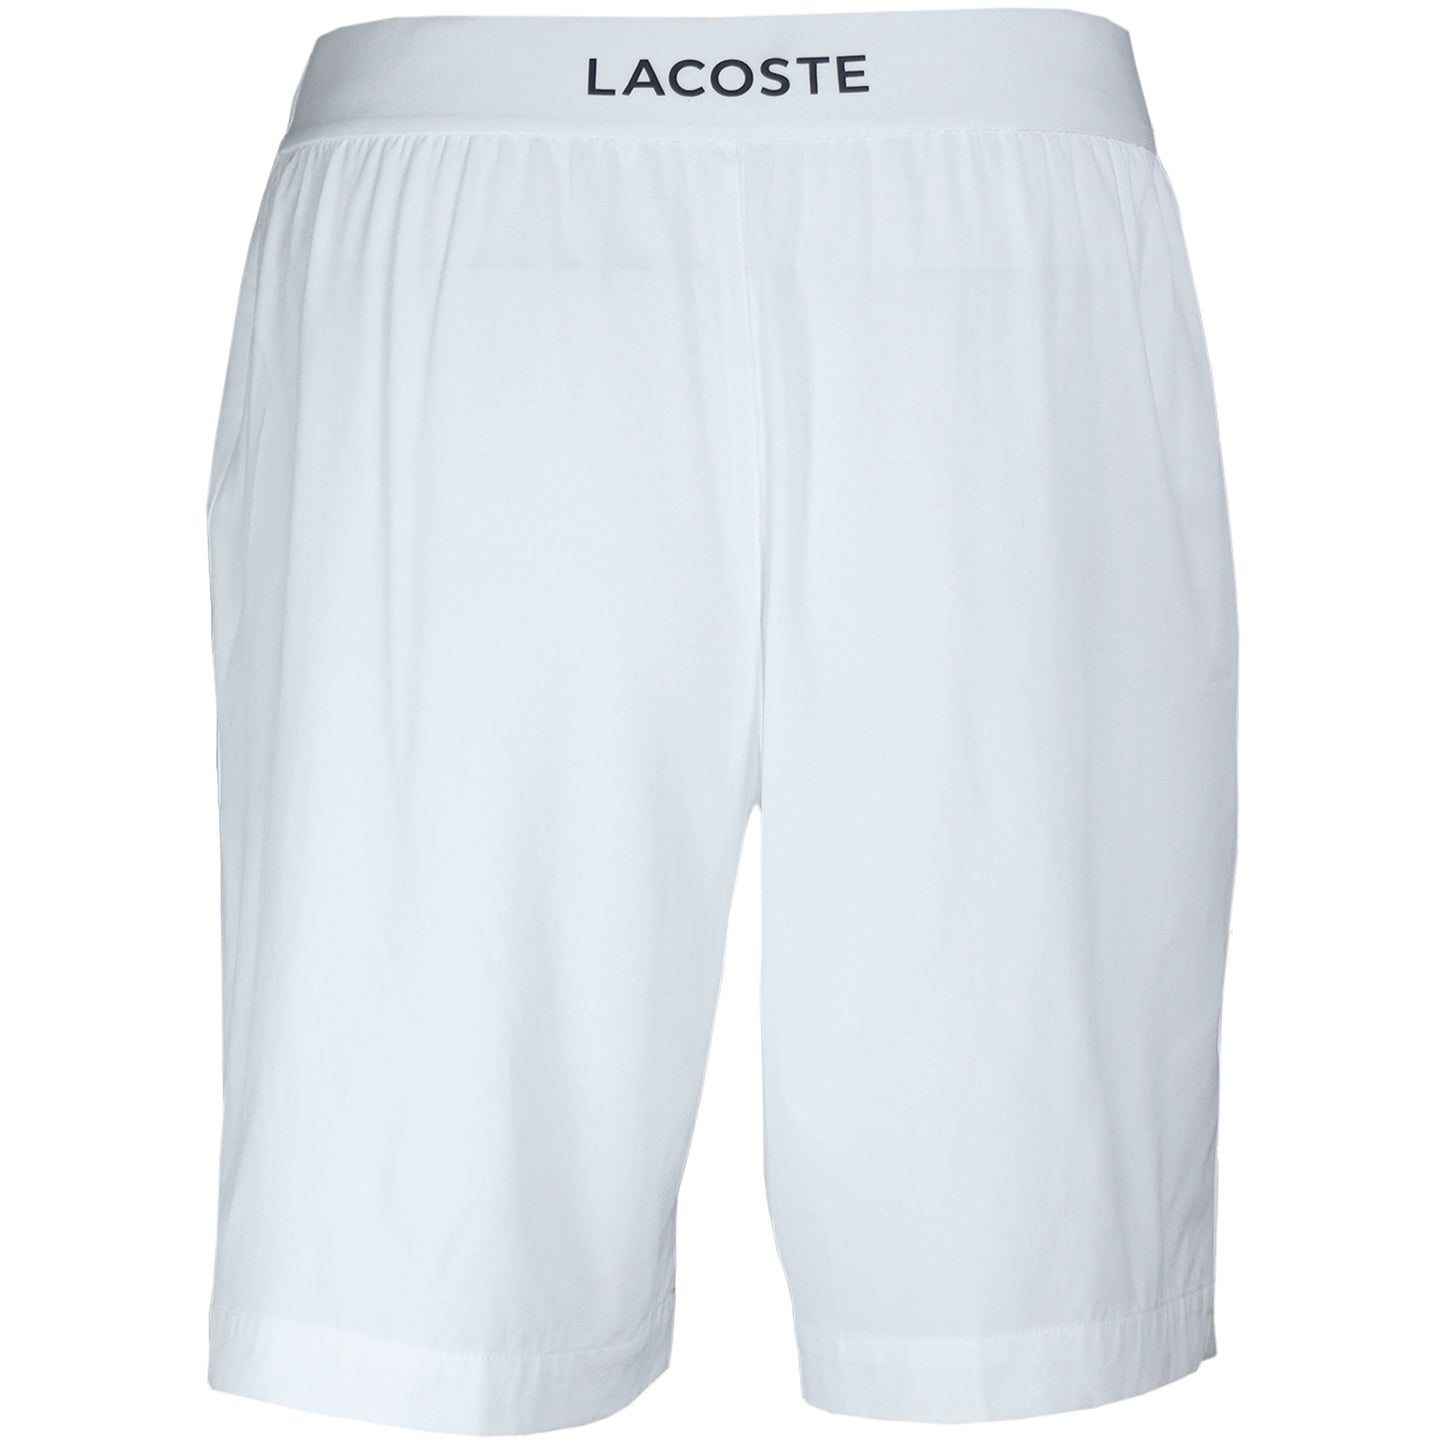 Lacoste Men's Ultra-Light Short GH6961-52-522